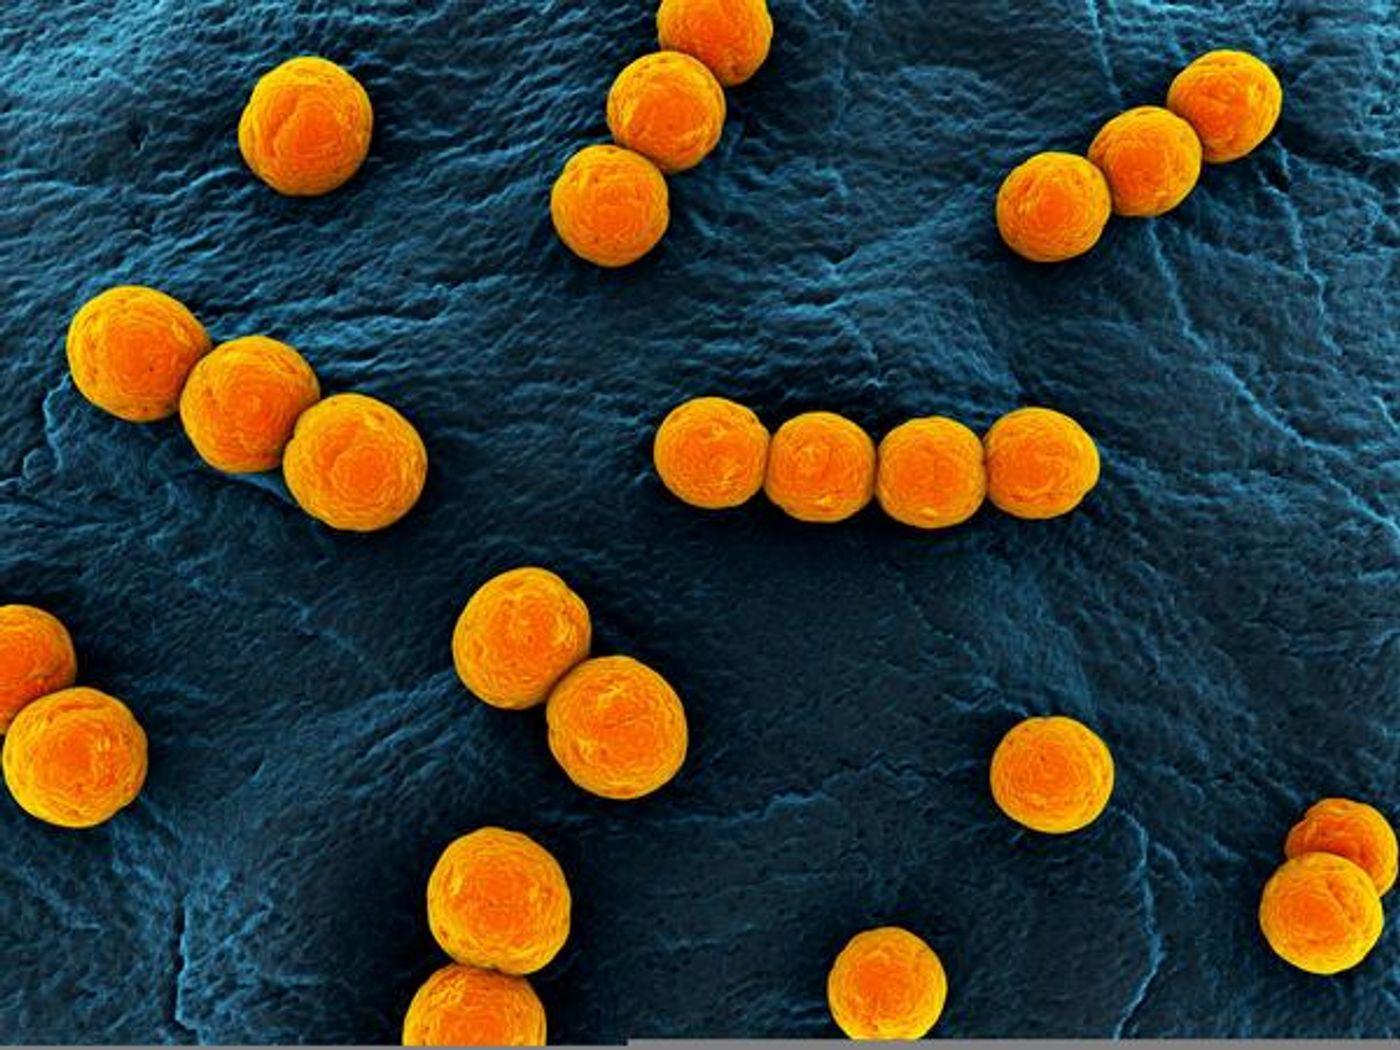 Streptococcus pyogenes may cause PANDAS